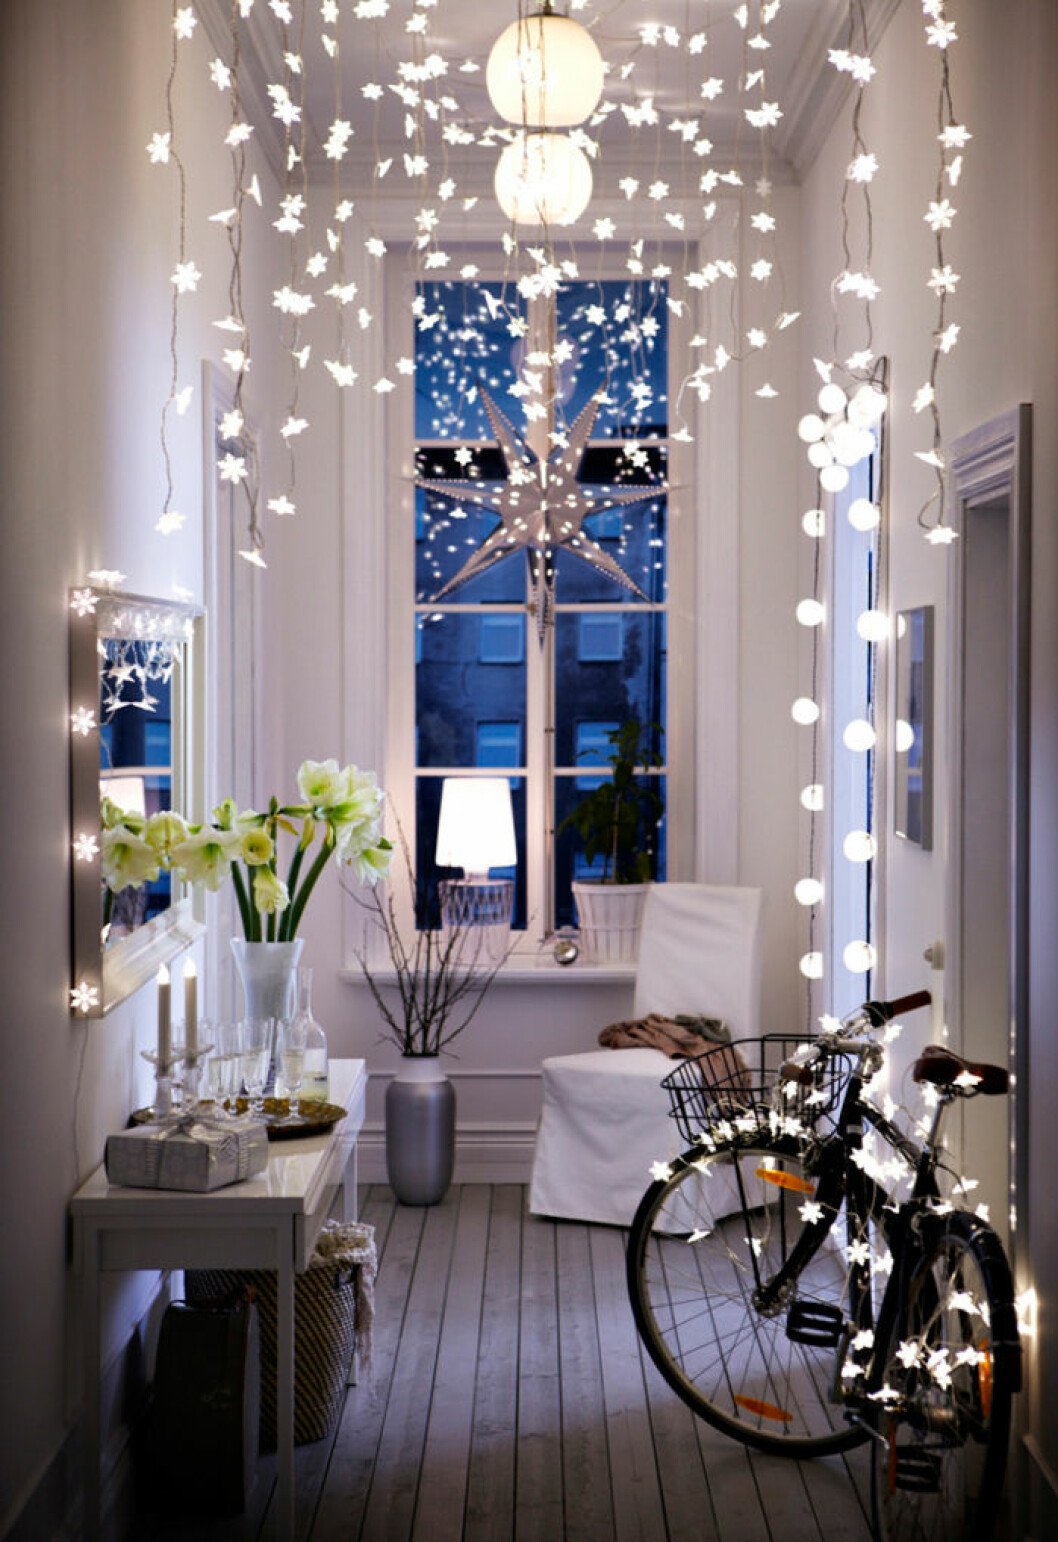 Dekorera med ljus i jul – piffa till hallen som hos Ikea 